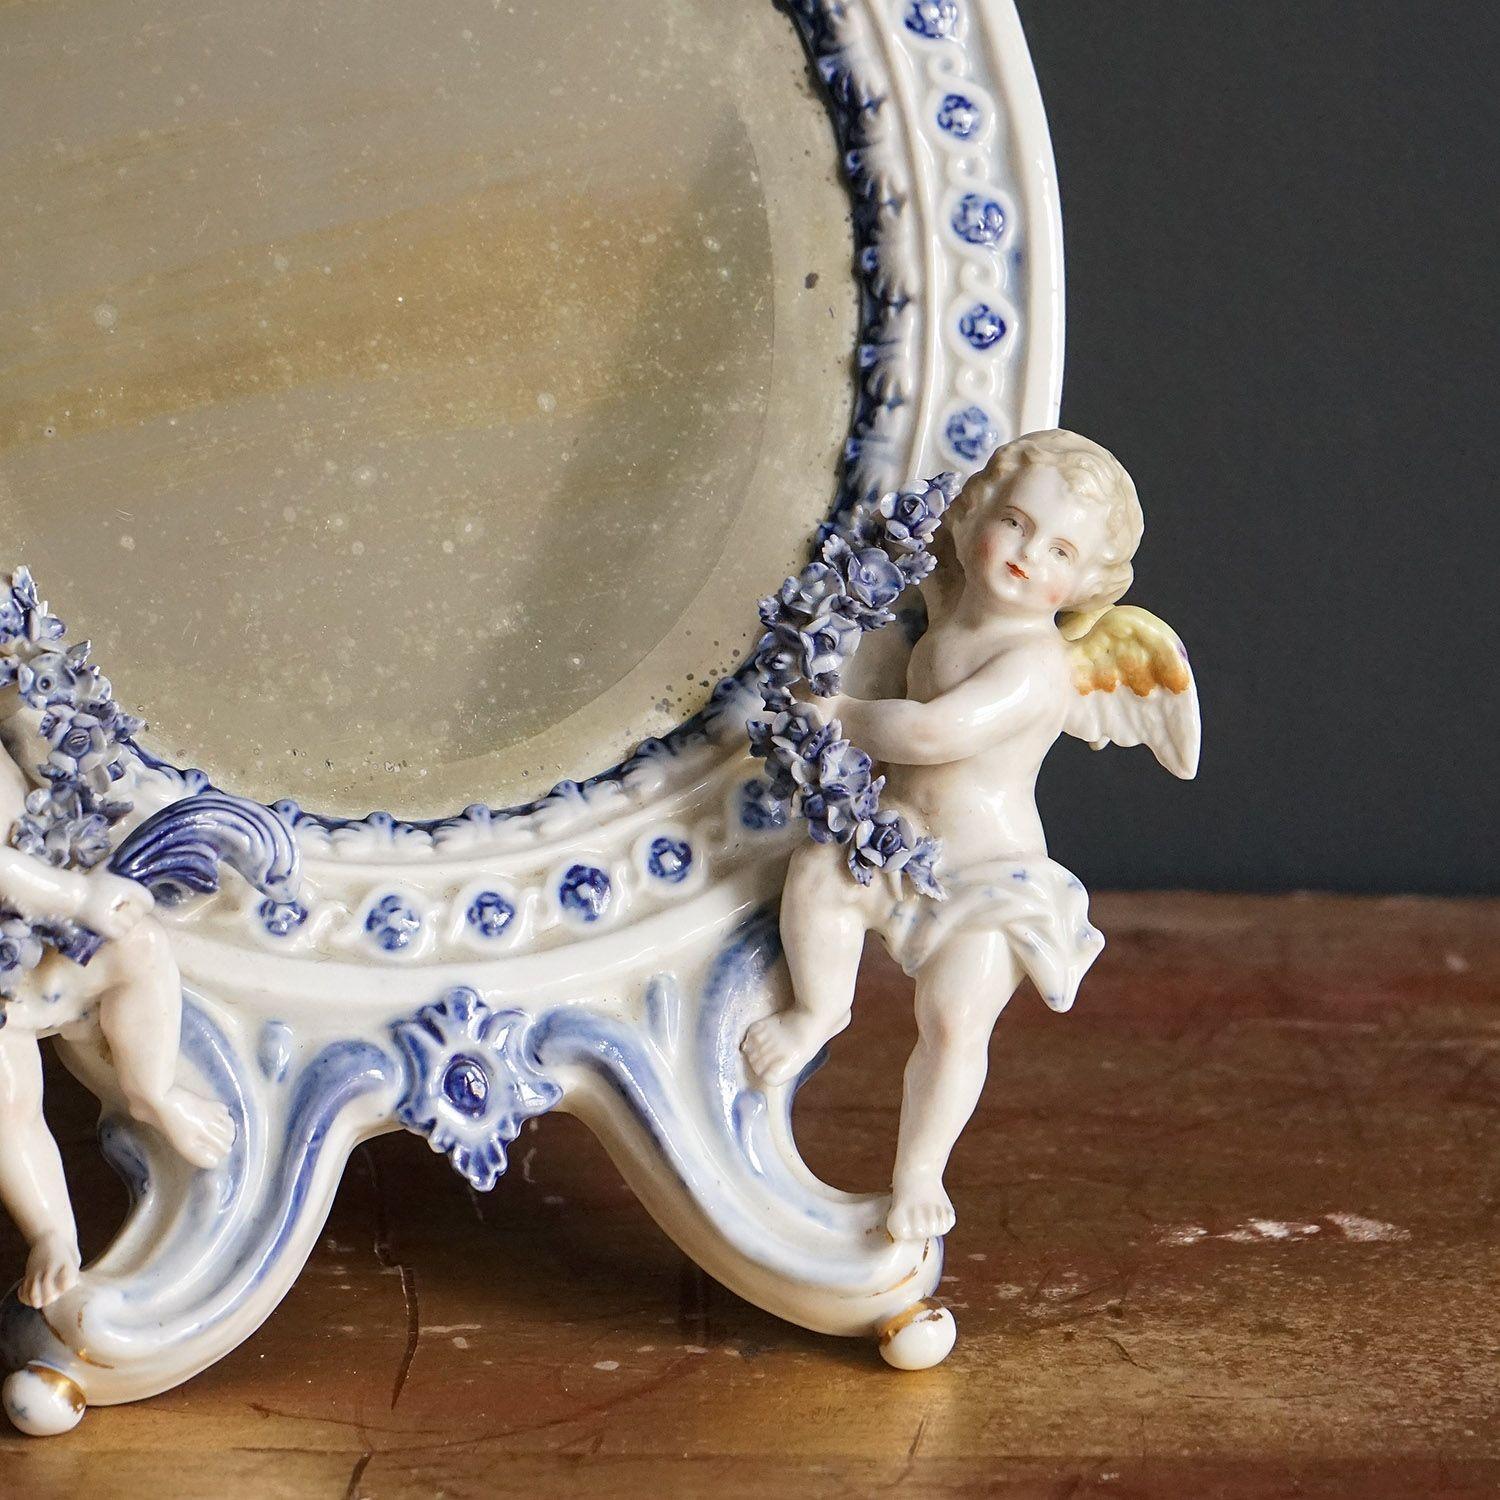 Miroir de toilette ovale en céramique

Un miroir en porcelaine de style rococo incrusté de guirlandes, de nœuds et de fleurs, flanqué de deux chérubins.

Plaque de miroir biseautée d'origine et dos de chevalet en bois.

Circa 1880 en date.

Il est